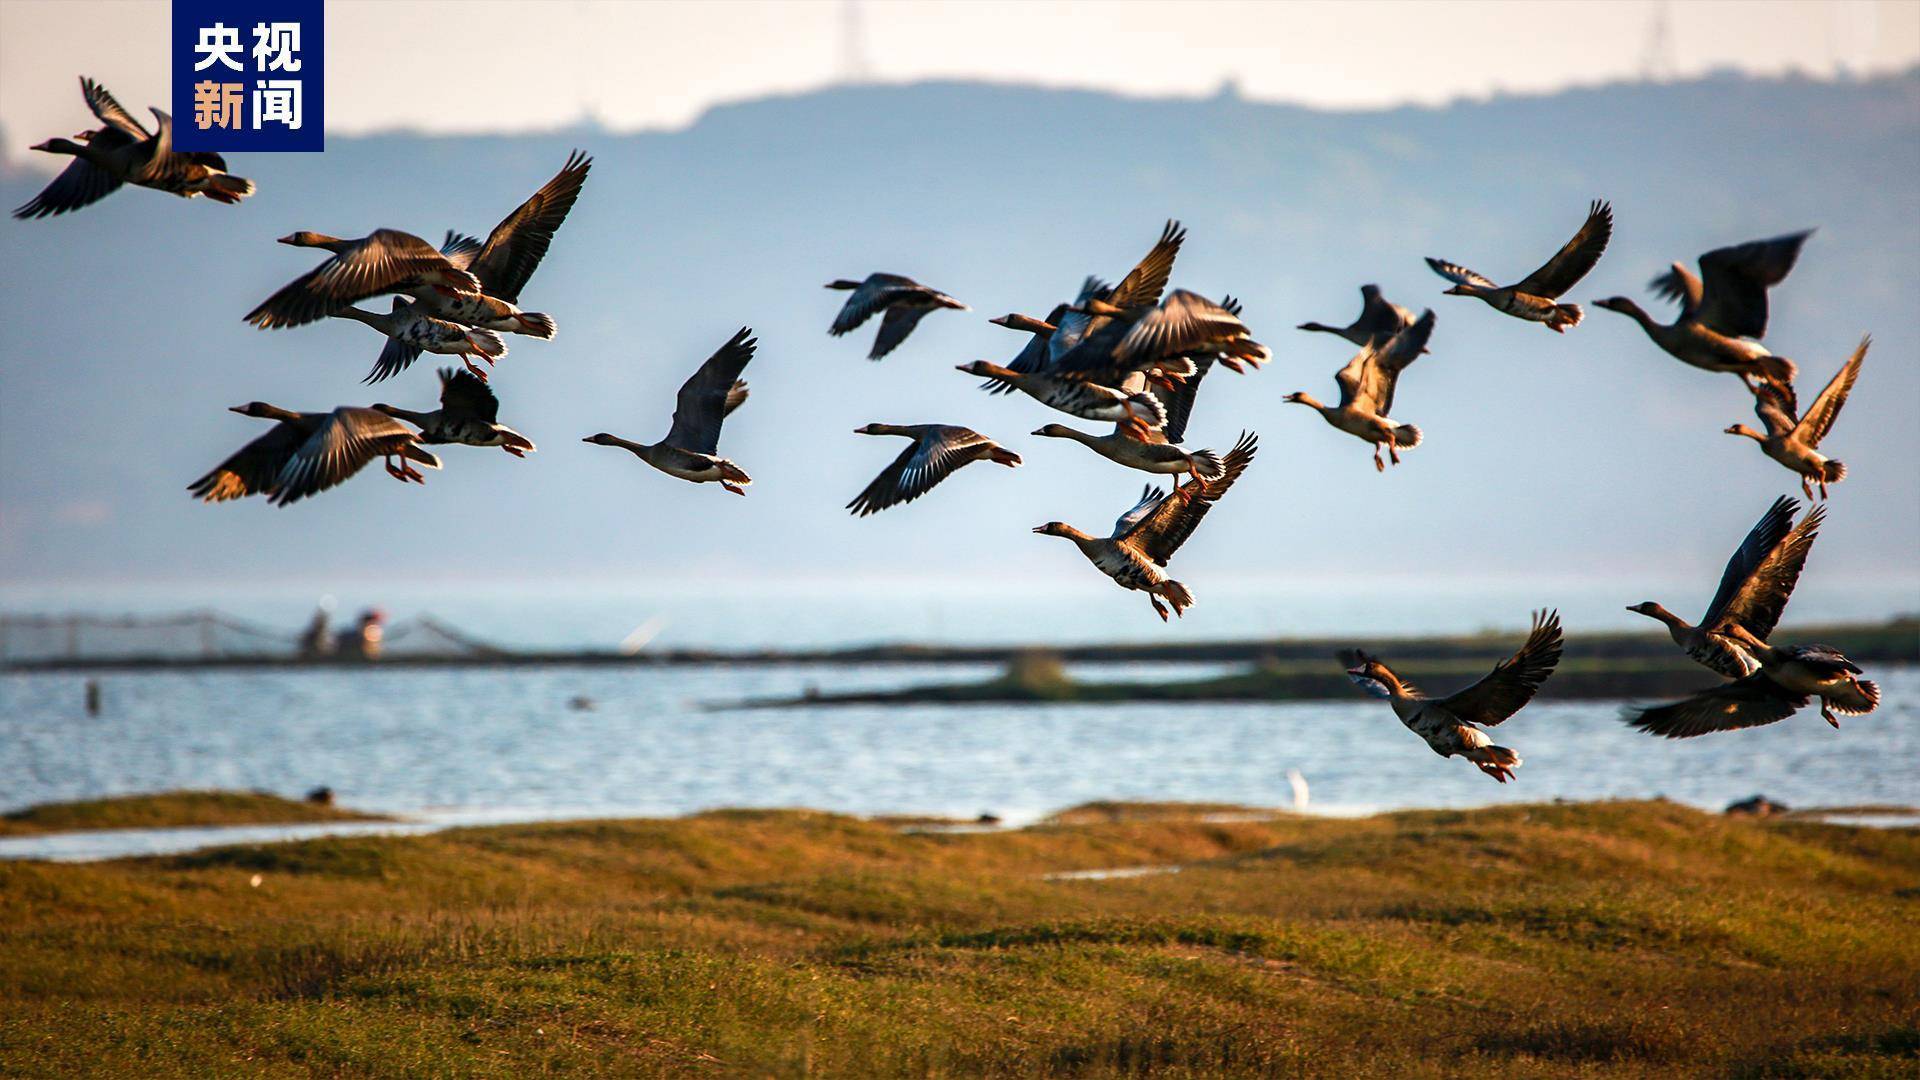 江西鄱阳湖:未经批准禁止进入鄱阳湖国家级自然保护区